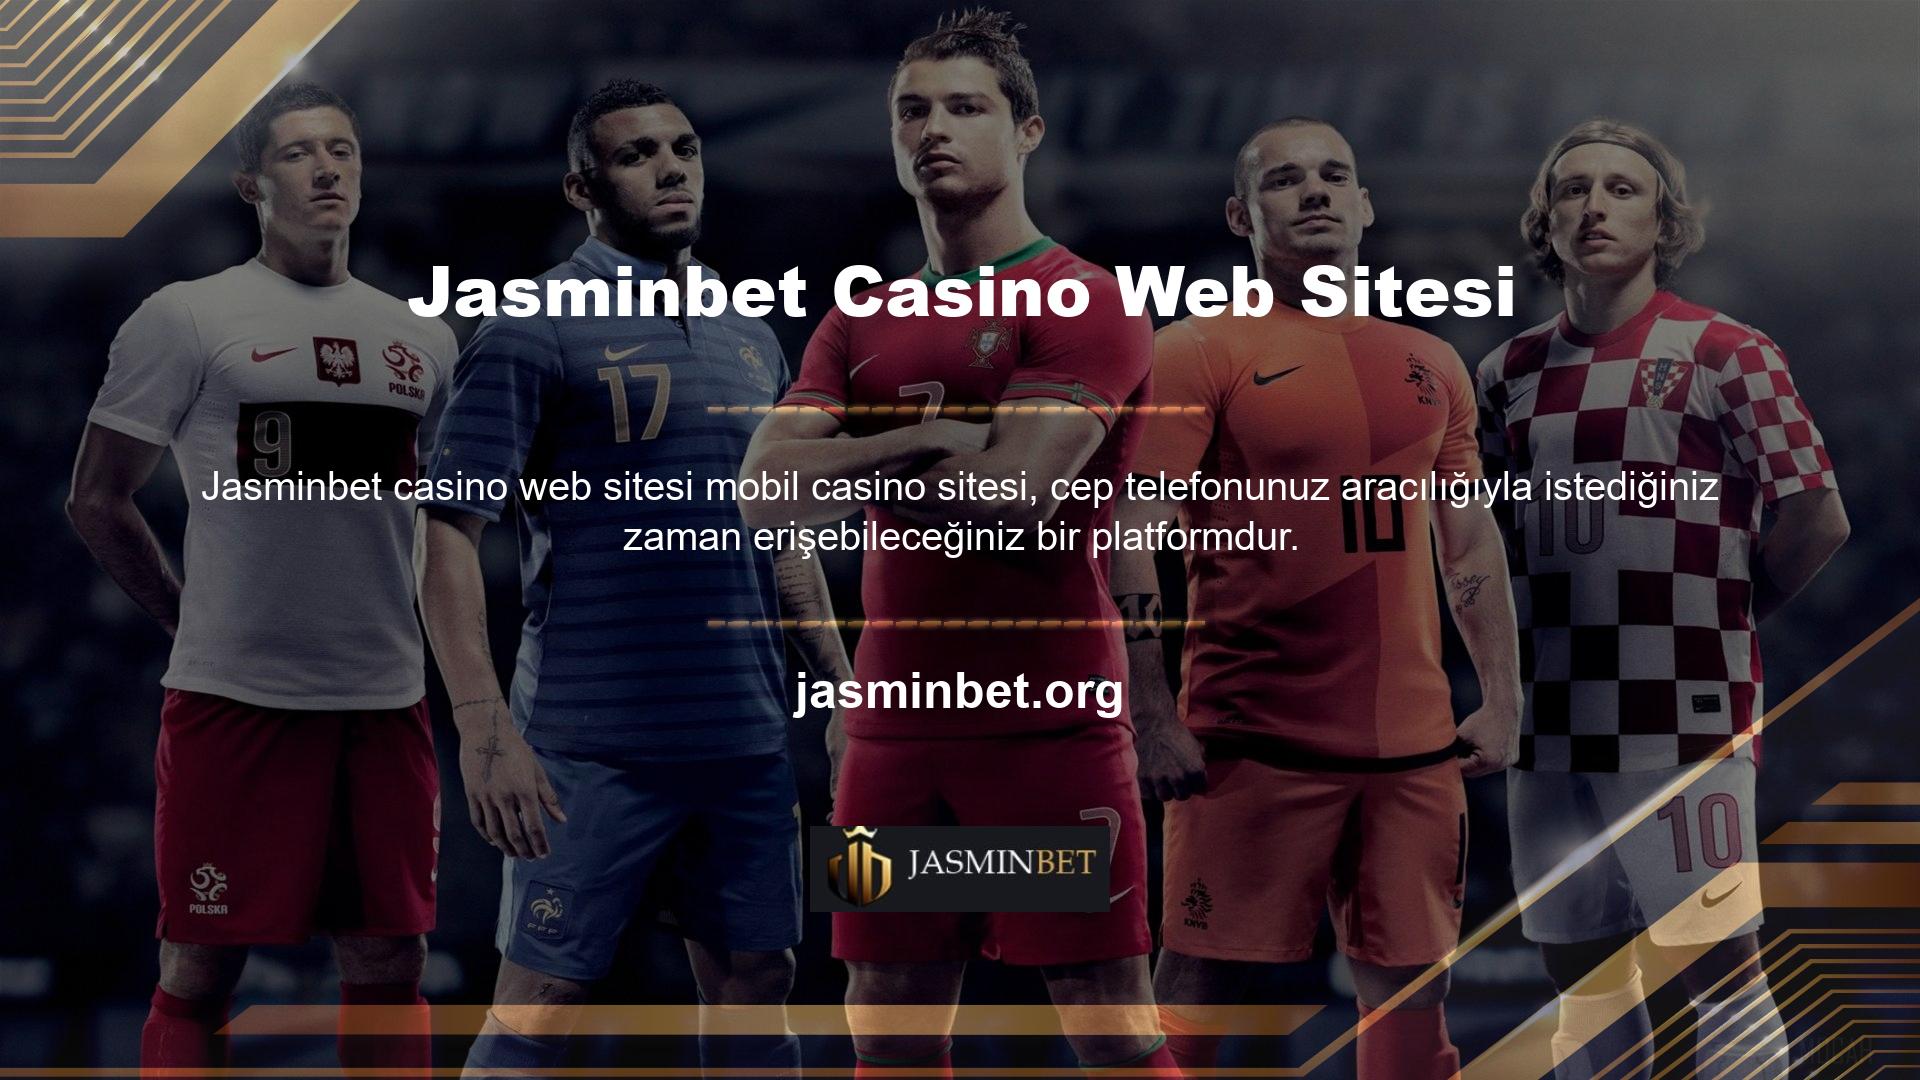 Türk online casino siteleri, bayilerin hizmetlerini Türkçe olarak sunduğu platformları da içerebilir